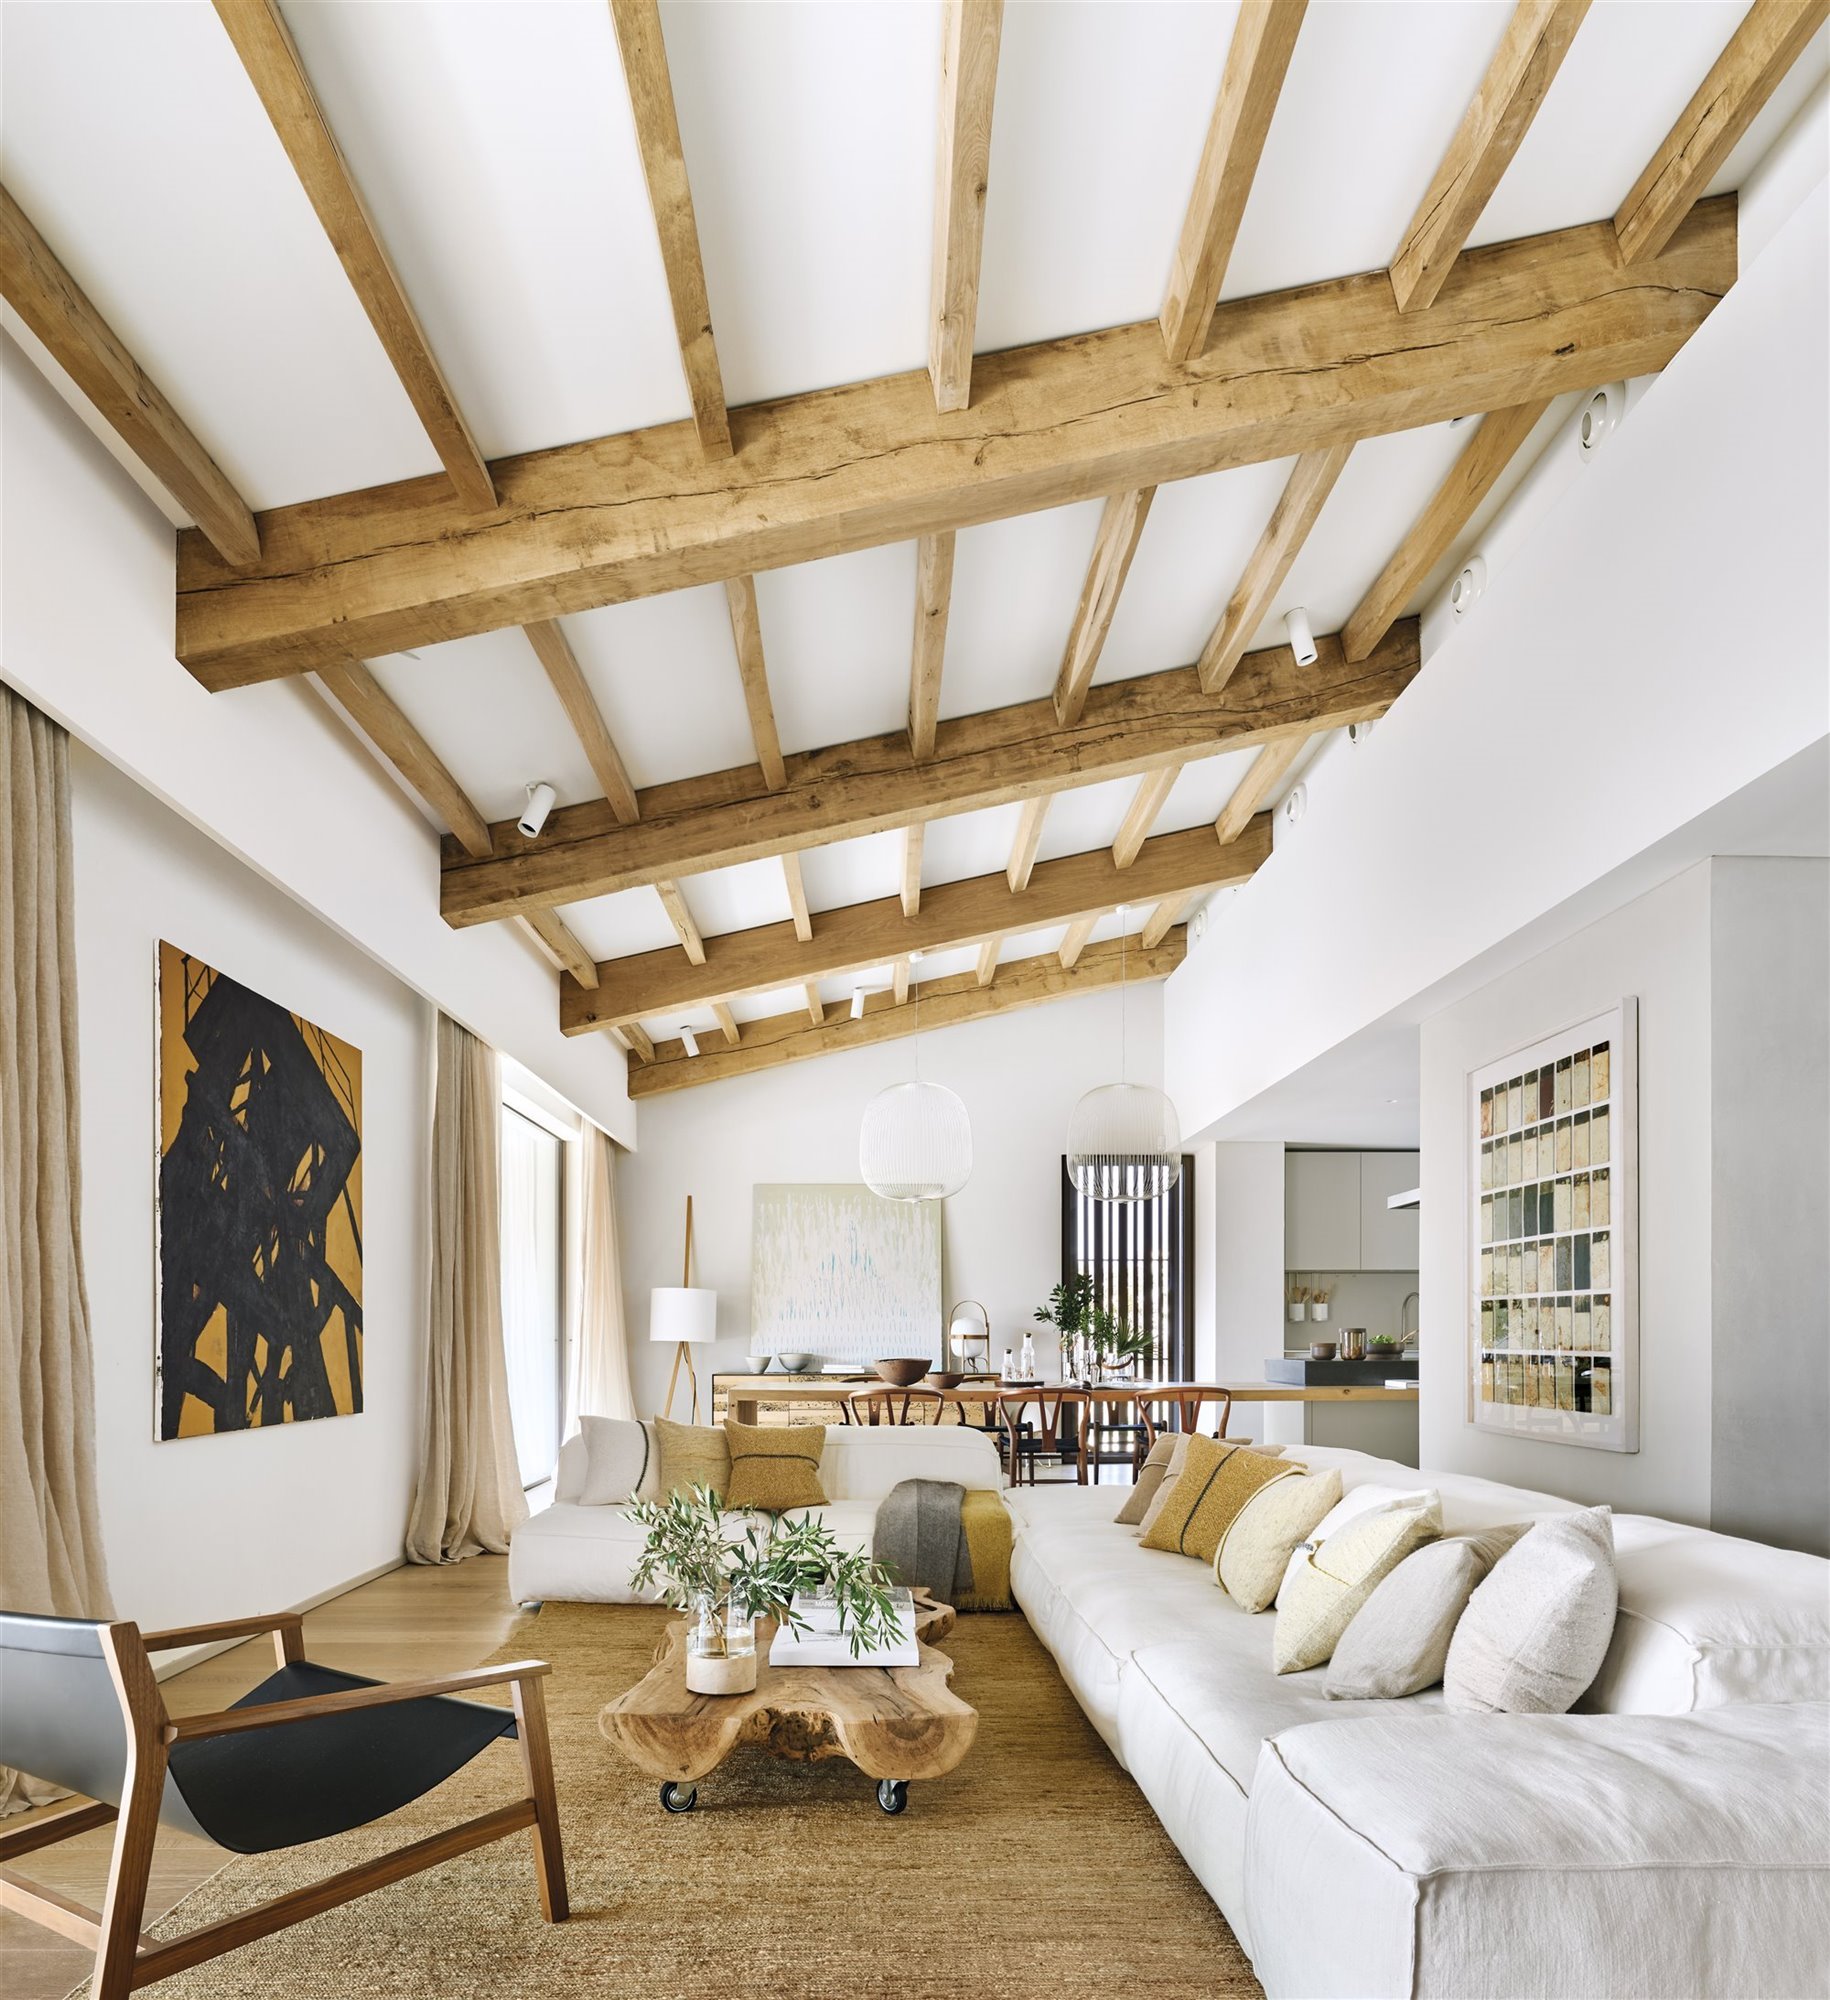 Salon de una casa moderna con vigas de madera vistas y sofá blanco